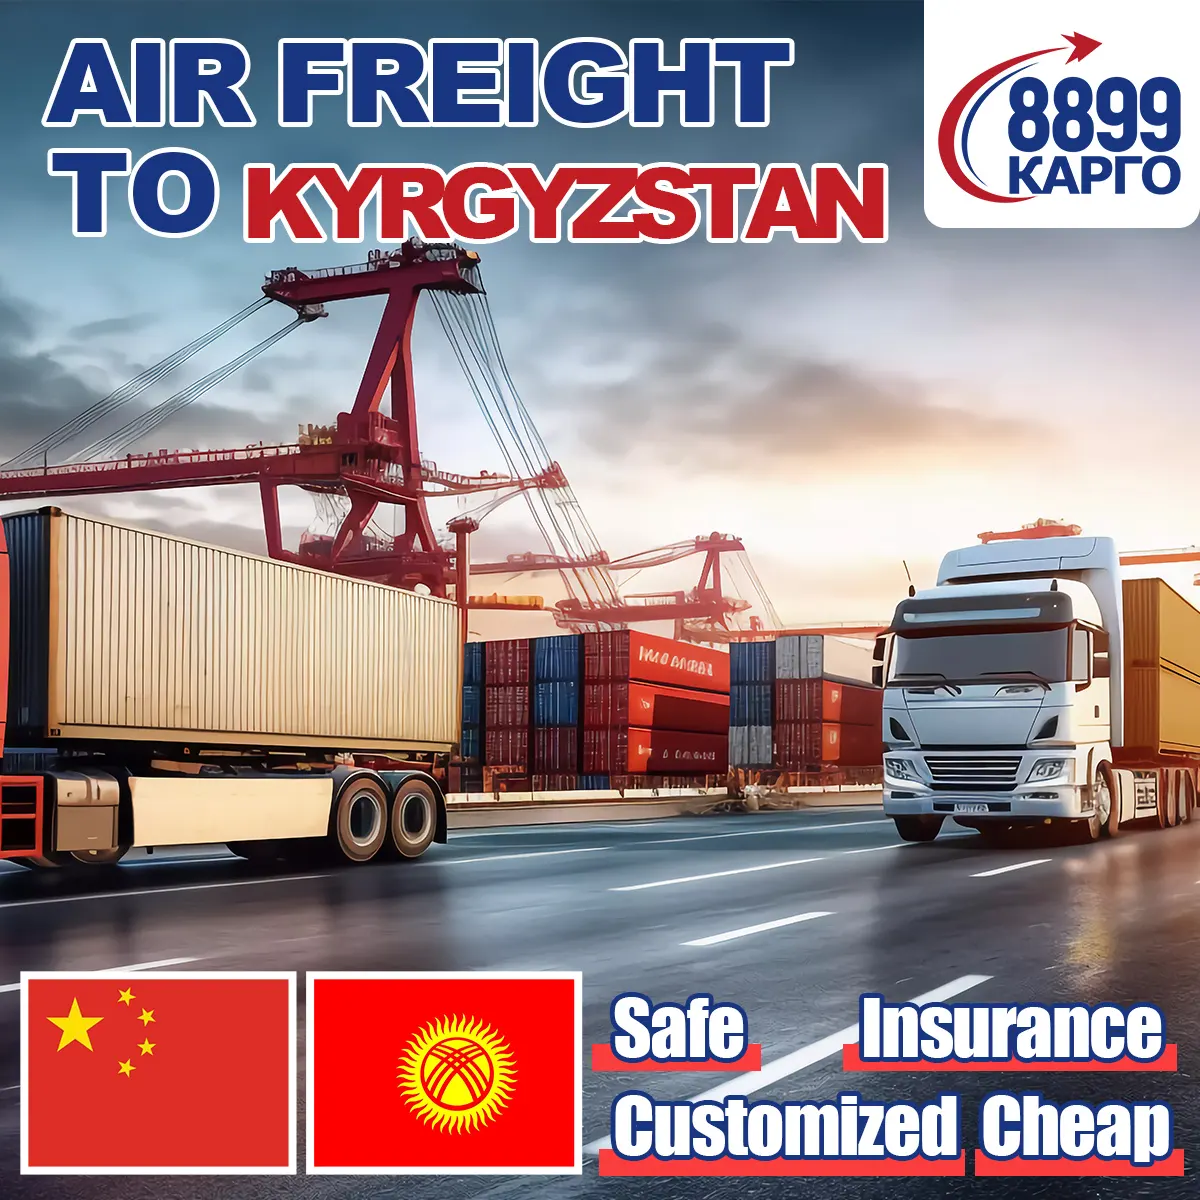 Pengiriman layanan pintu ke pintu layanan pengiriman pengiriman pengiriman pengiriman pengiriman ke layanan pengiriman kyrgyzstan dari Tiongkok ke kazakhstan